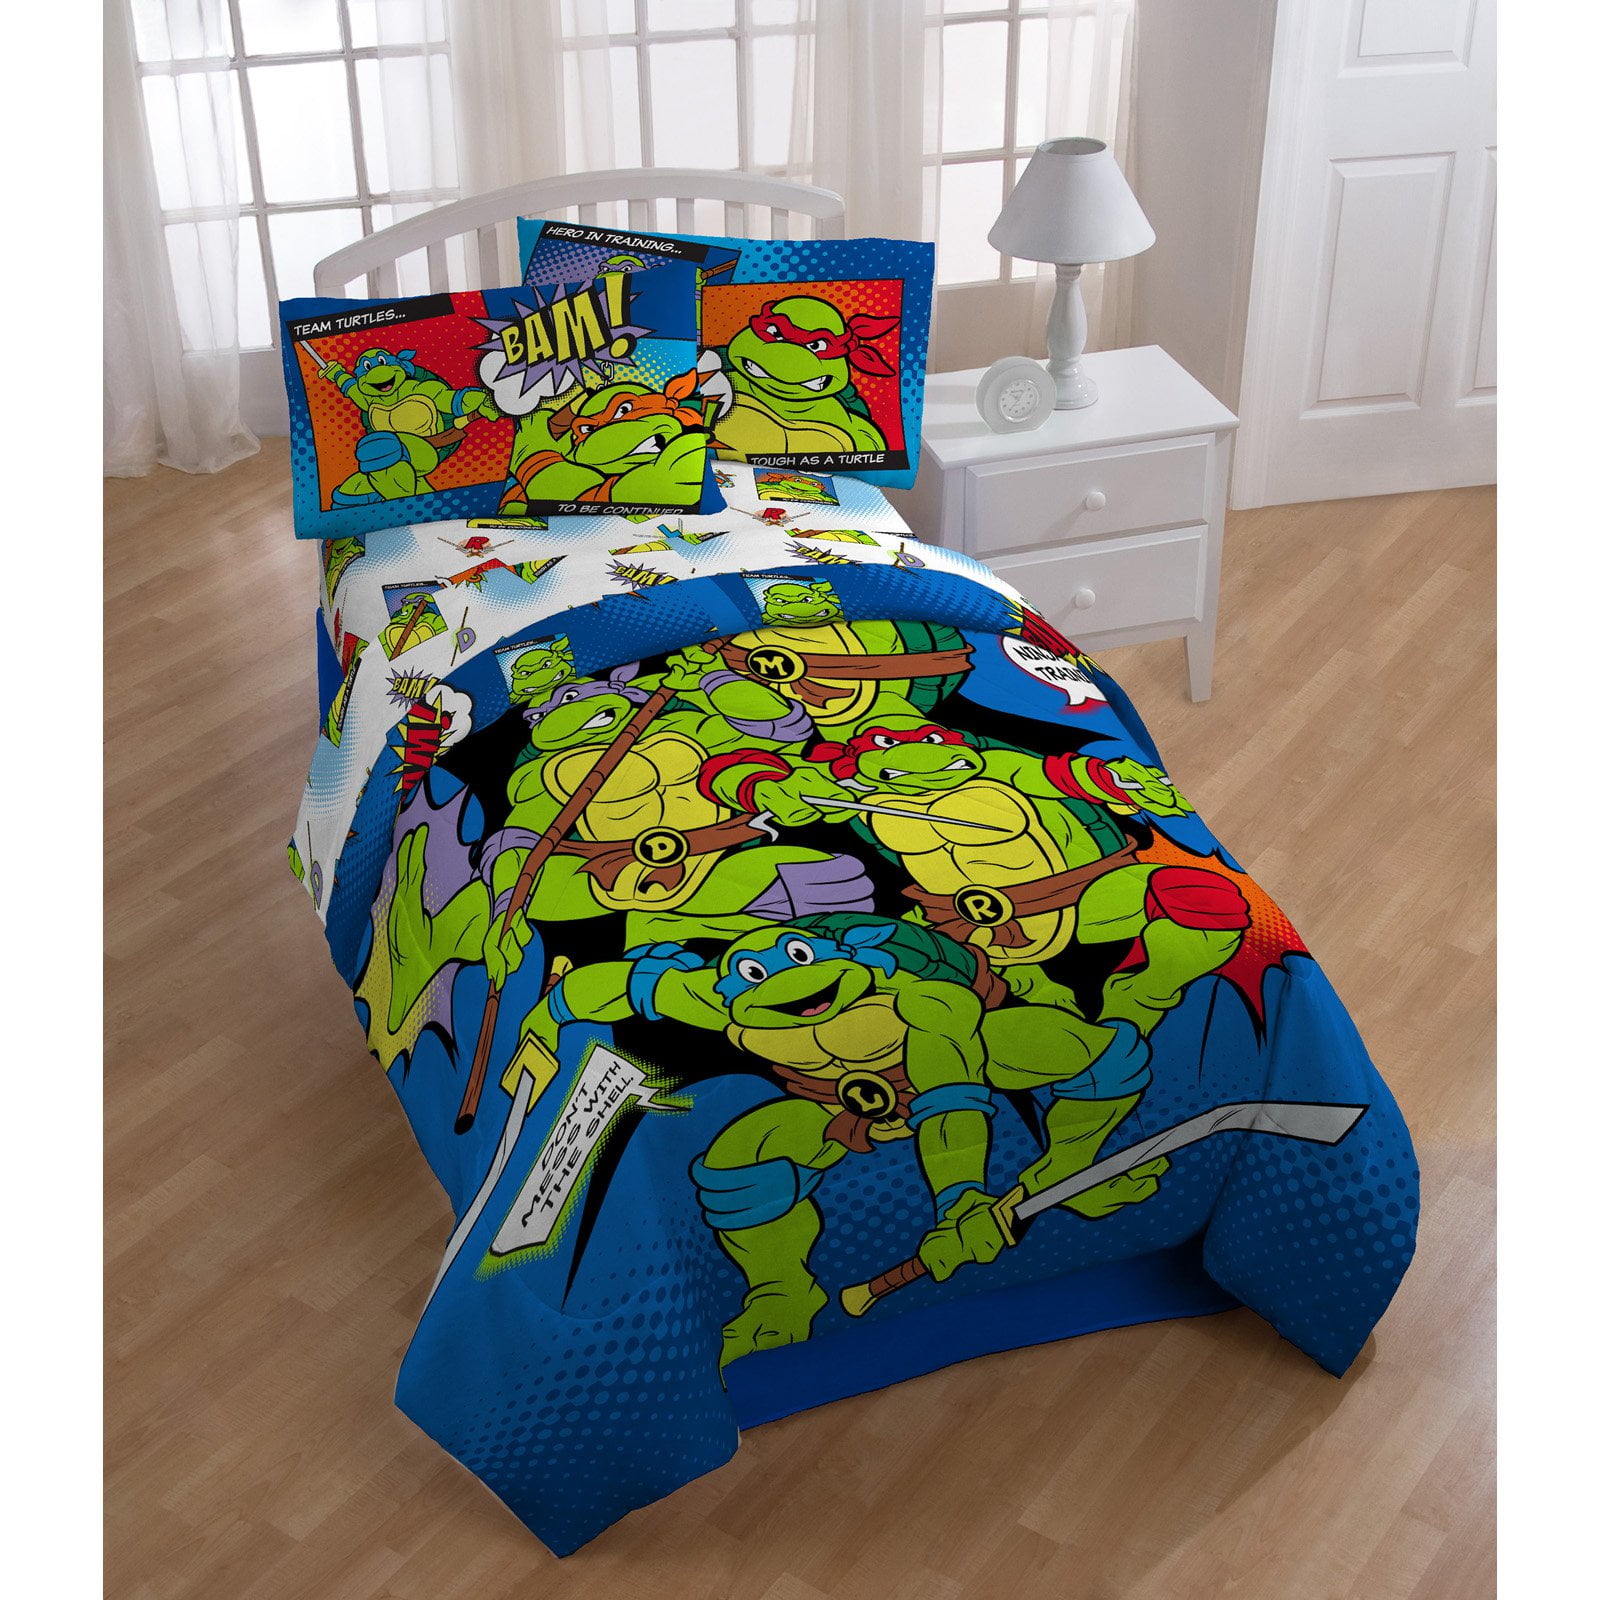 Nickelodeon Ninja Turtle 2 Piece Comforter Set Twin/Full Reversible Comforter 